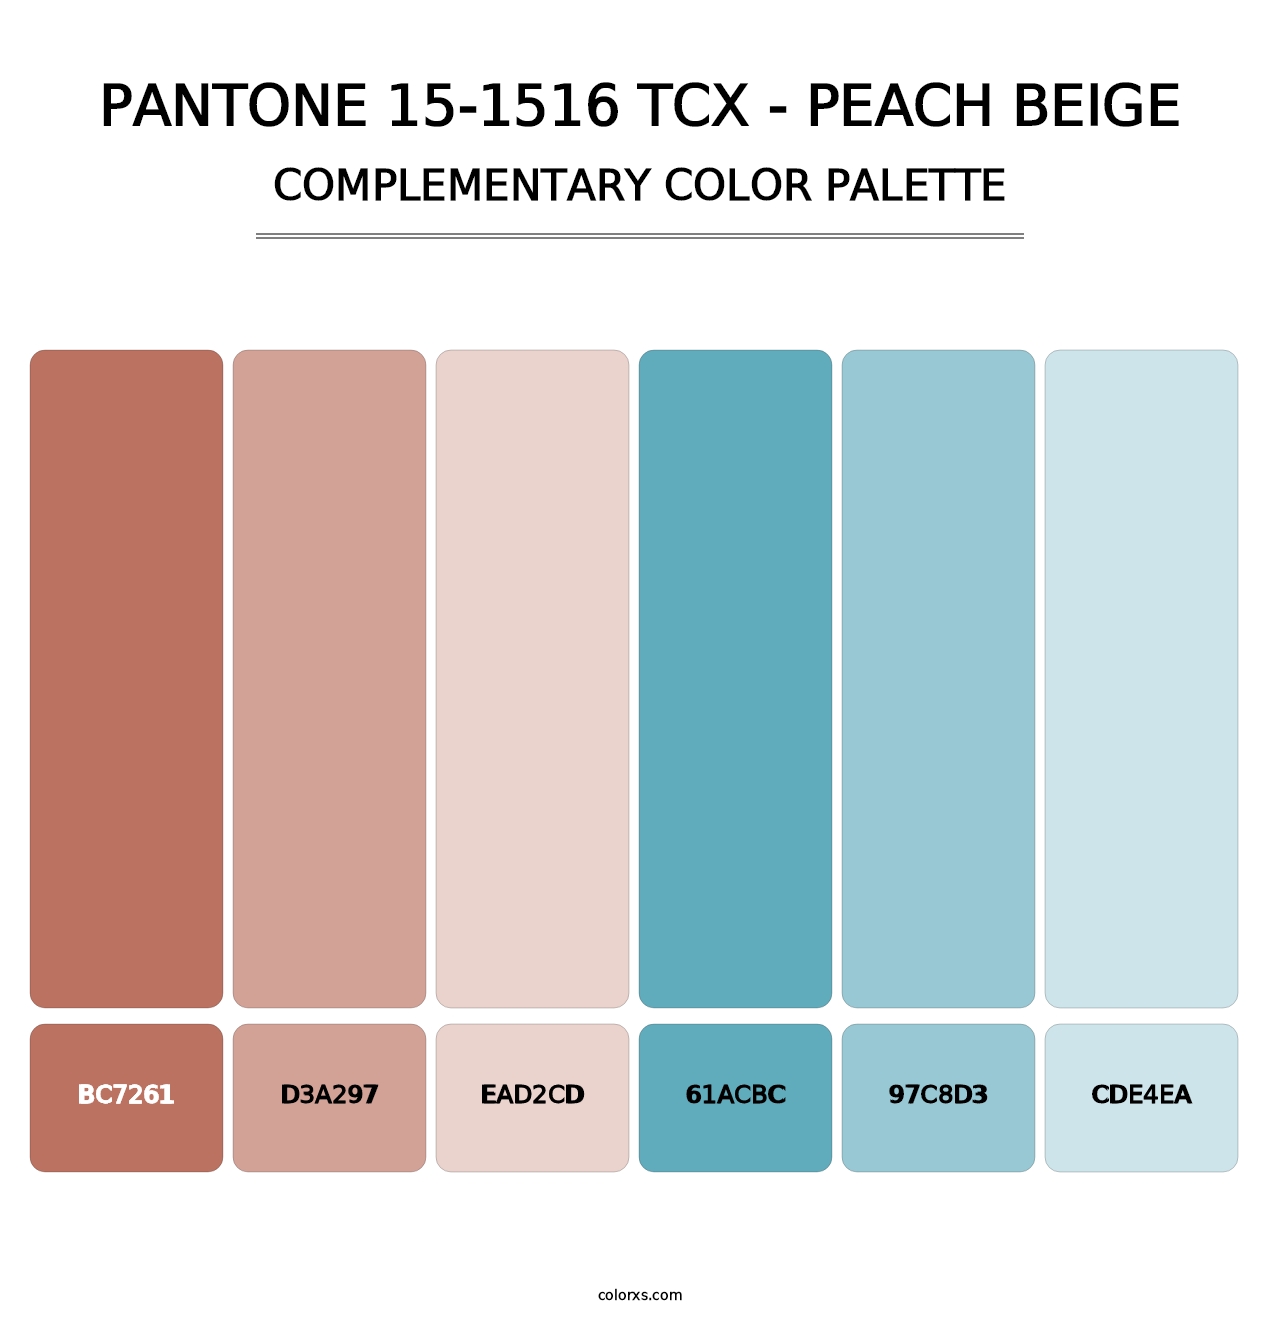 PANTONE 15-1516 TCX - Peach Beige - Complementary Color Palette